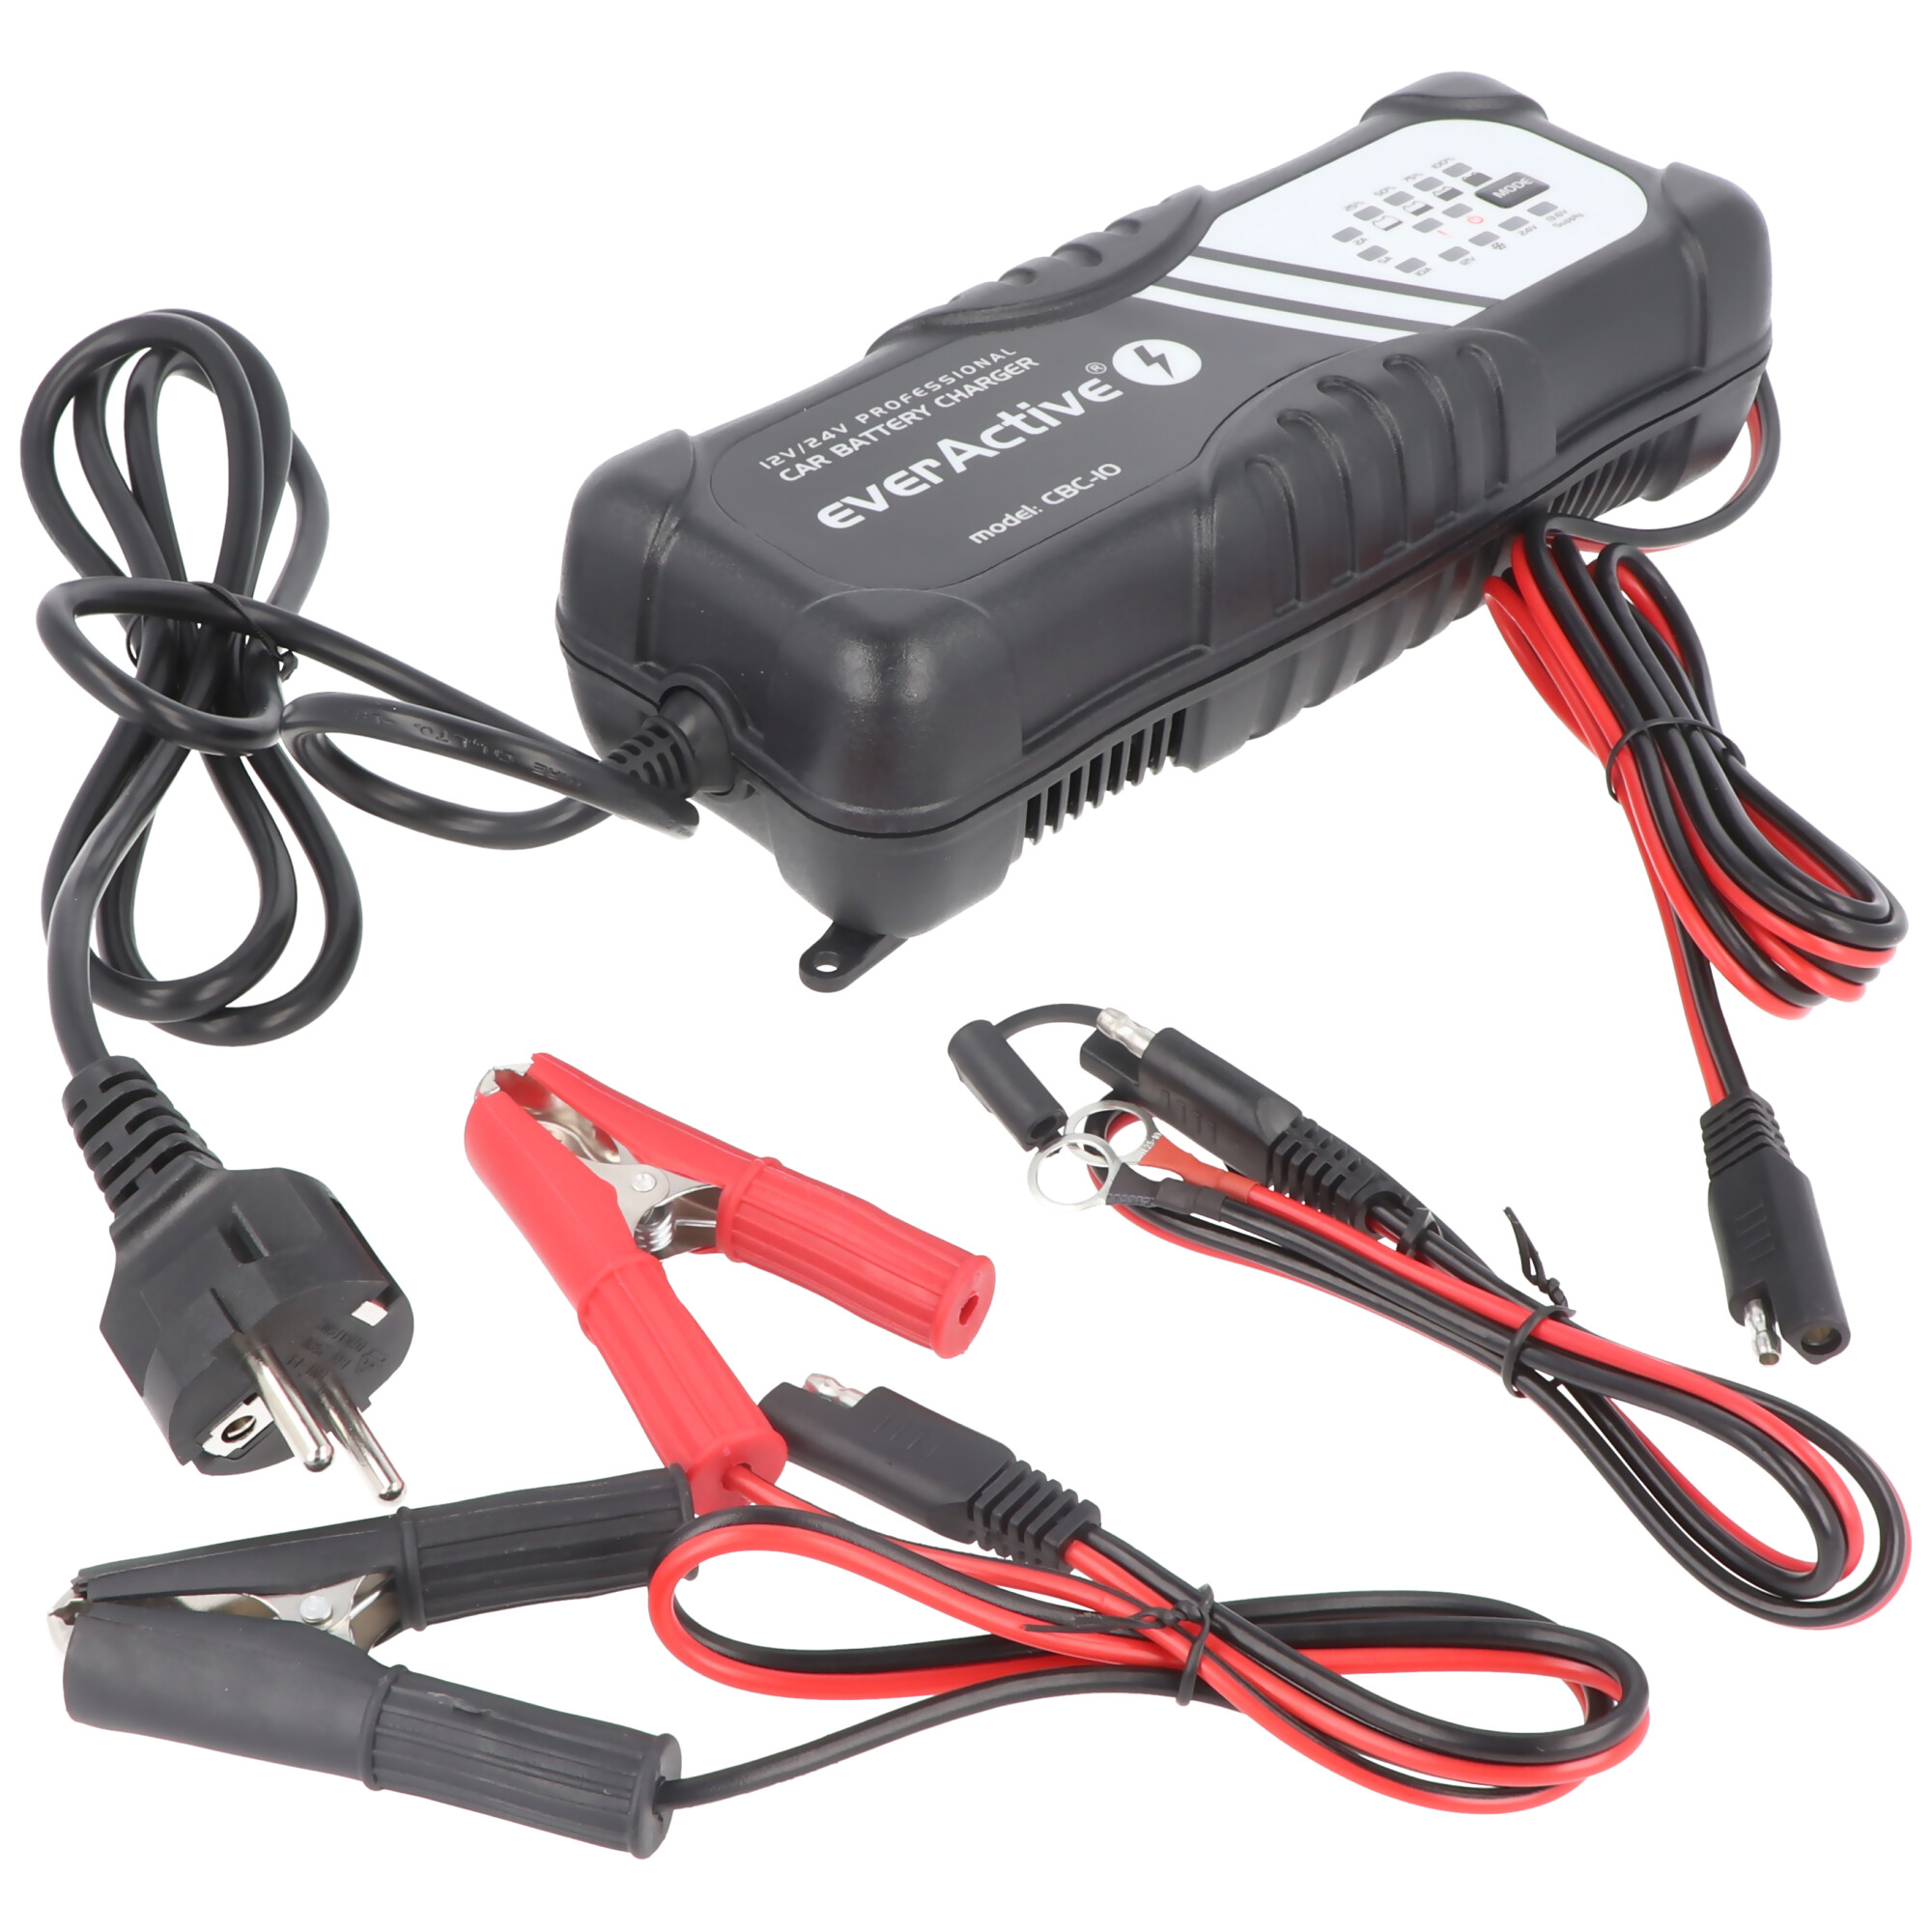 Chargeur rapide pour 6 volts et 12 volts pour voiture, moto, plomb, PB,  gel, batterie AGM, Chargeurs pour batteries au plomb (PB), Chargeurs